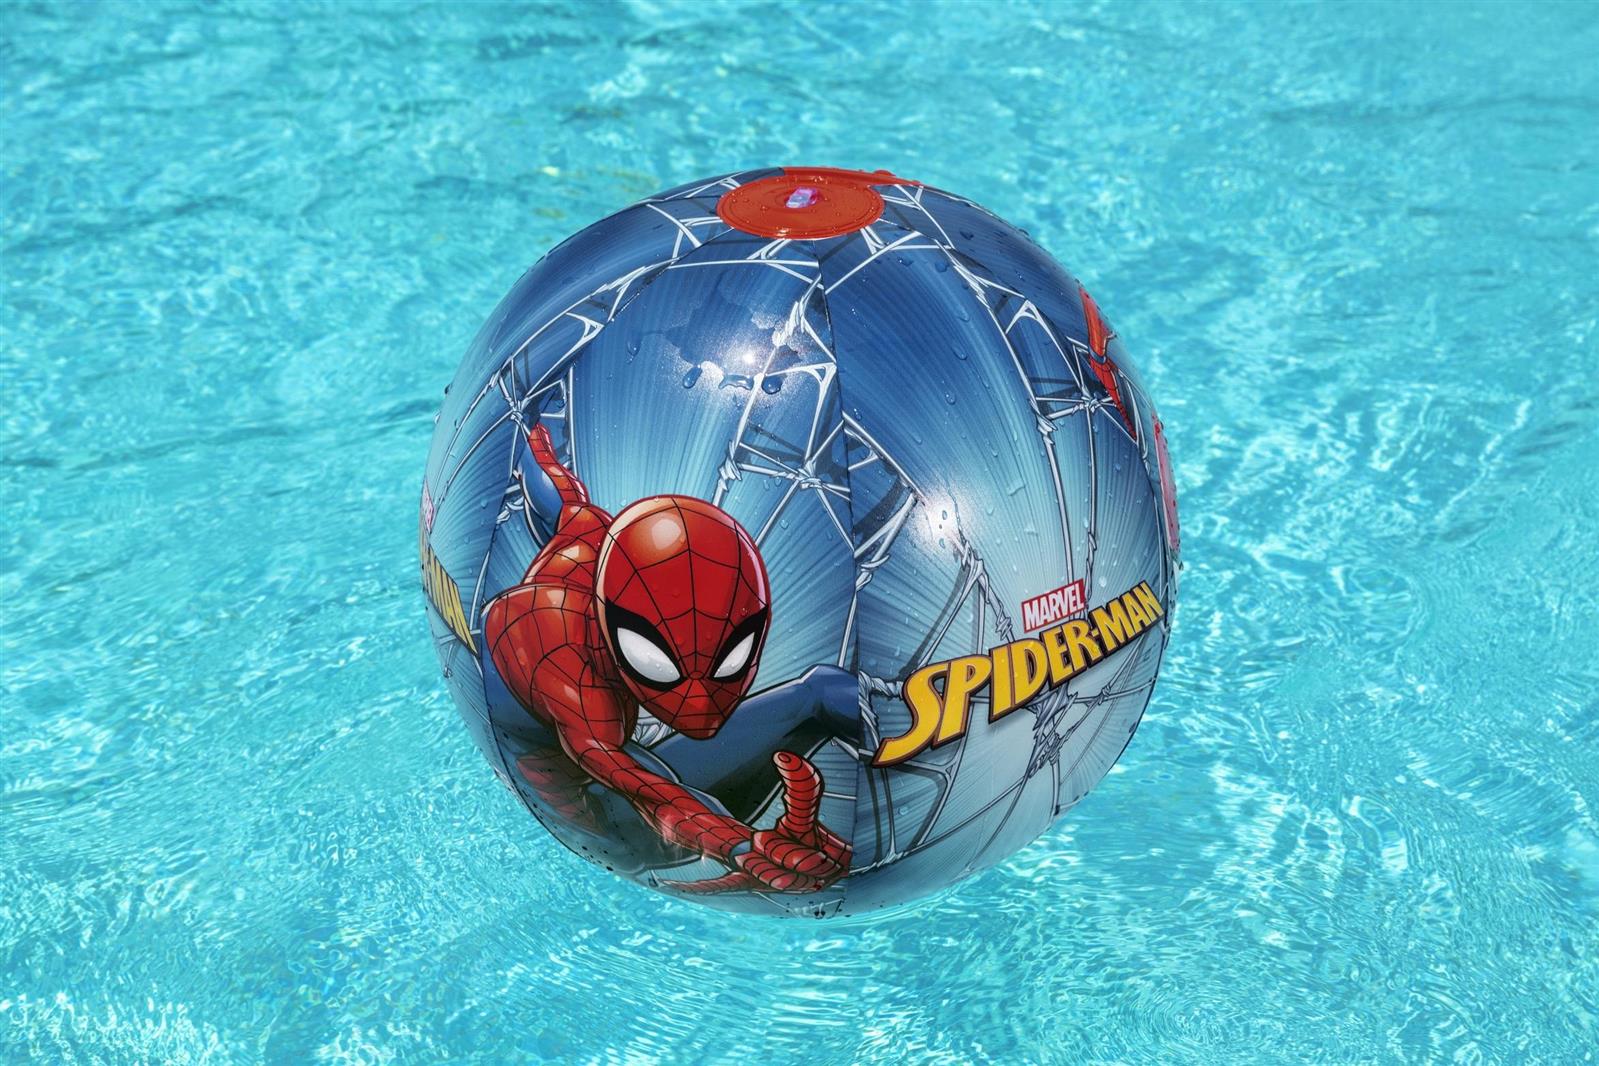 Pallone mare marvel spider-man cm. 51 - Bestway, Avengers, Spiderman